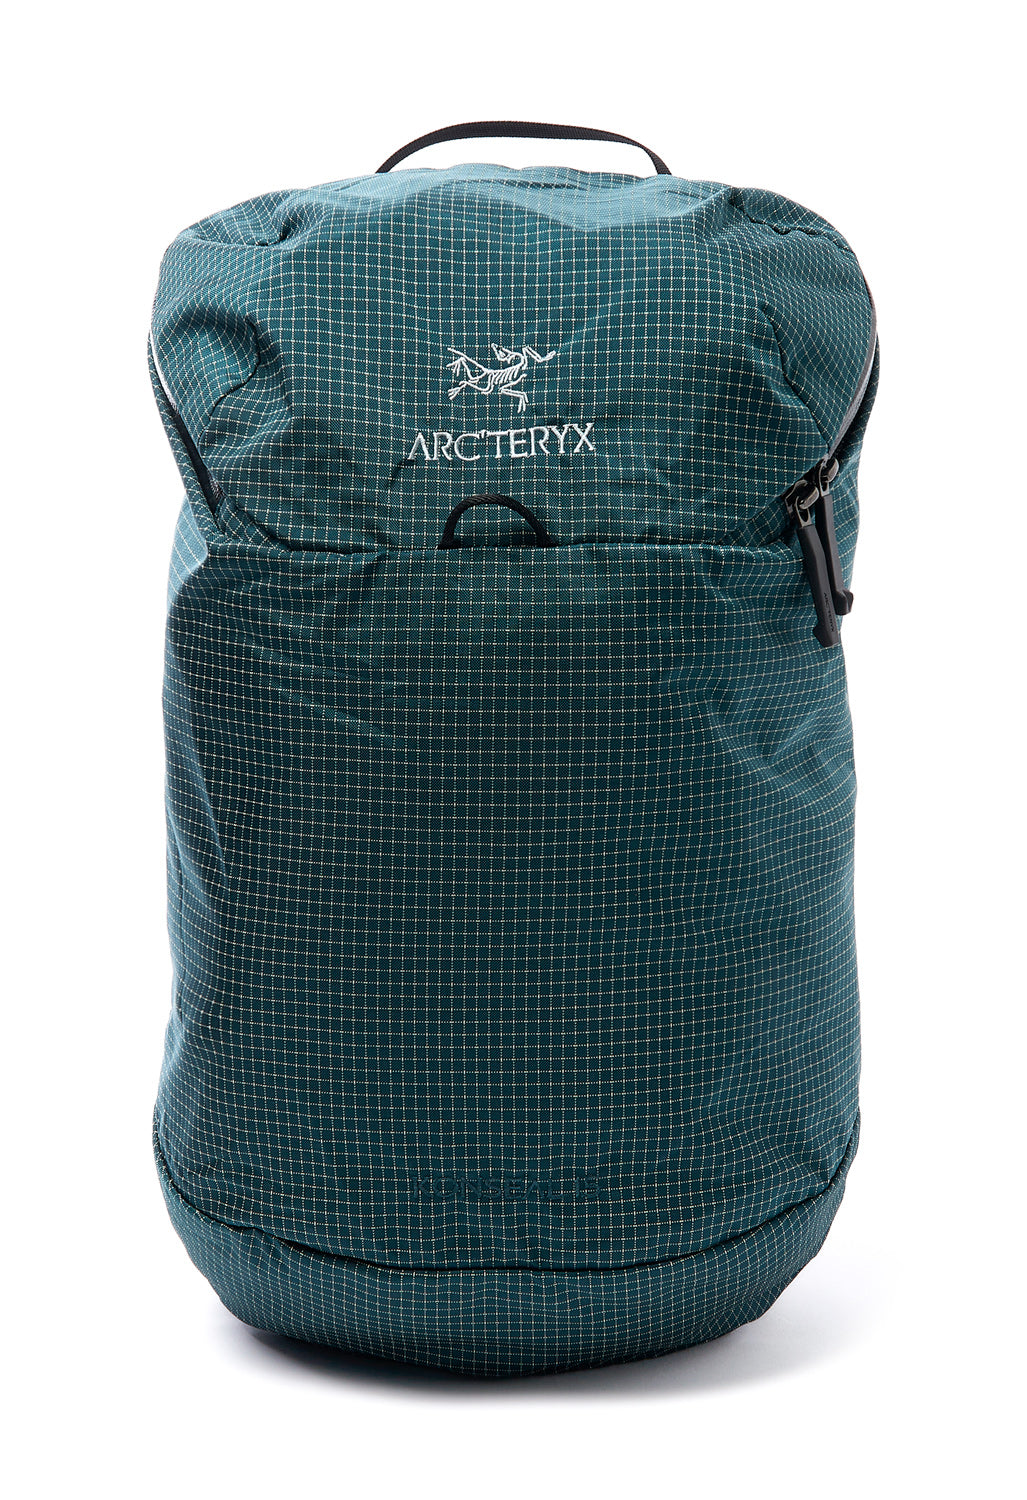 Arc'teryx Konseal 15 Backpack 1